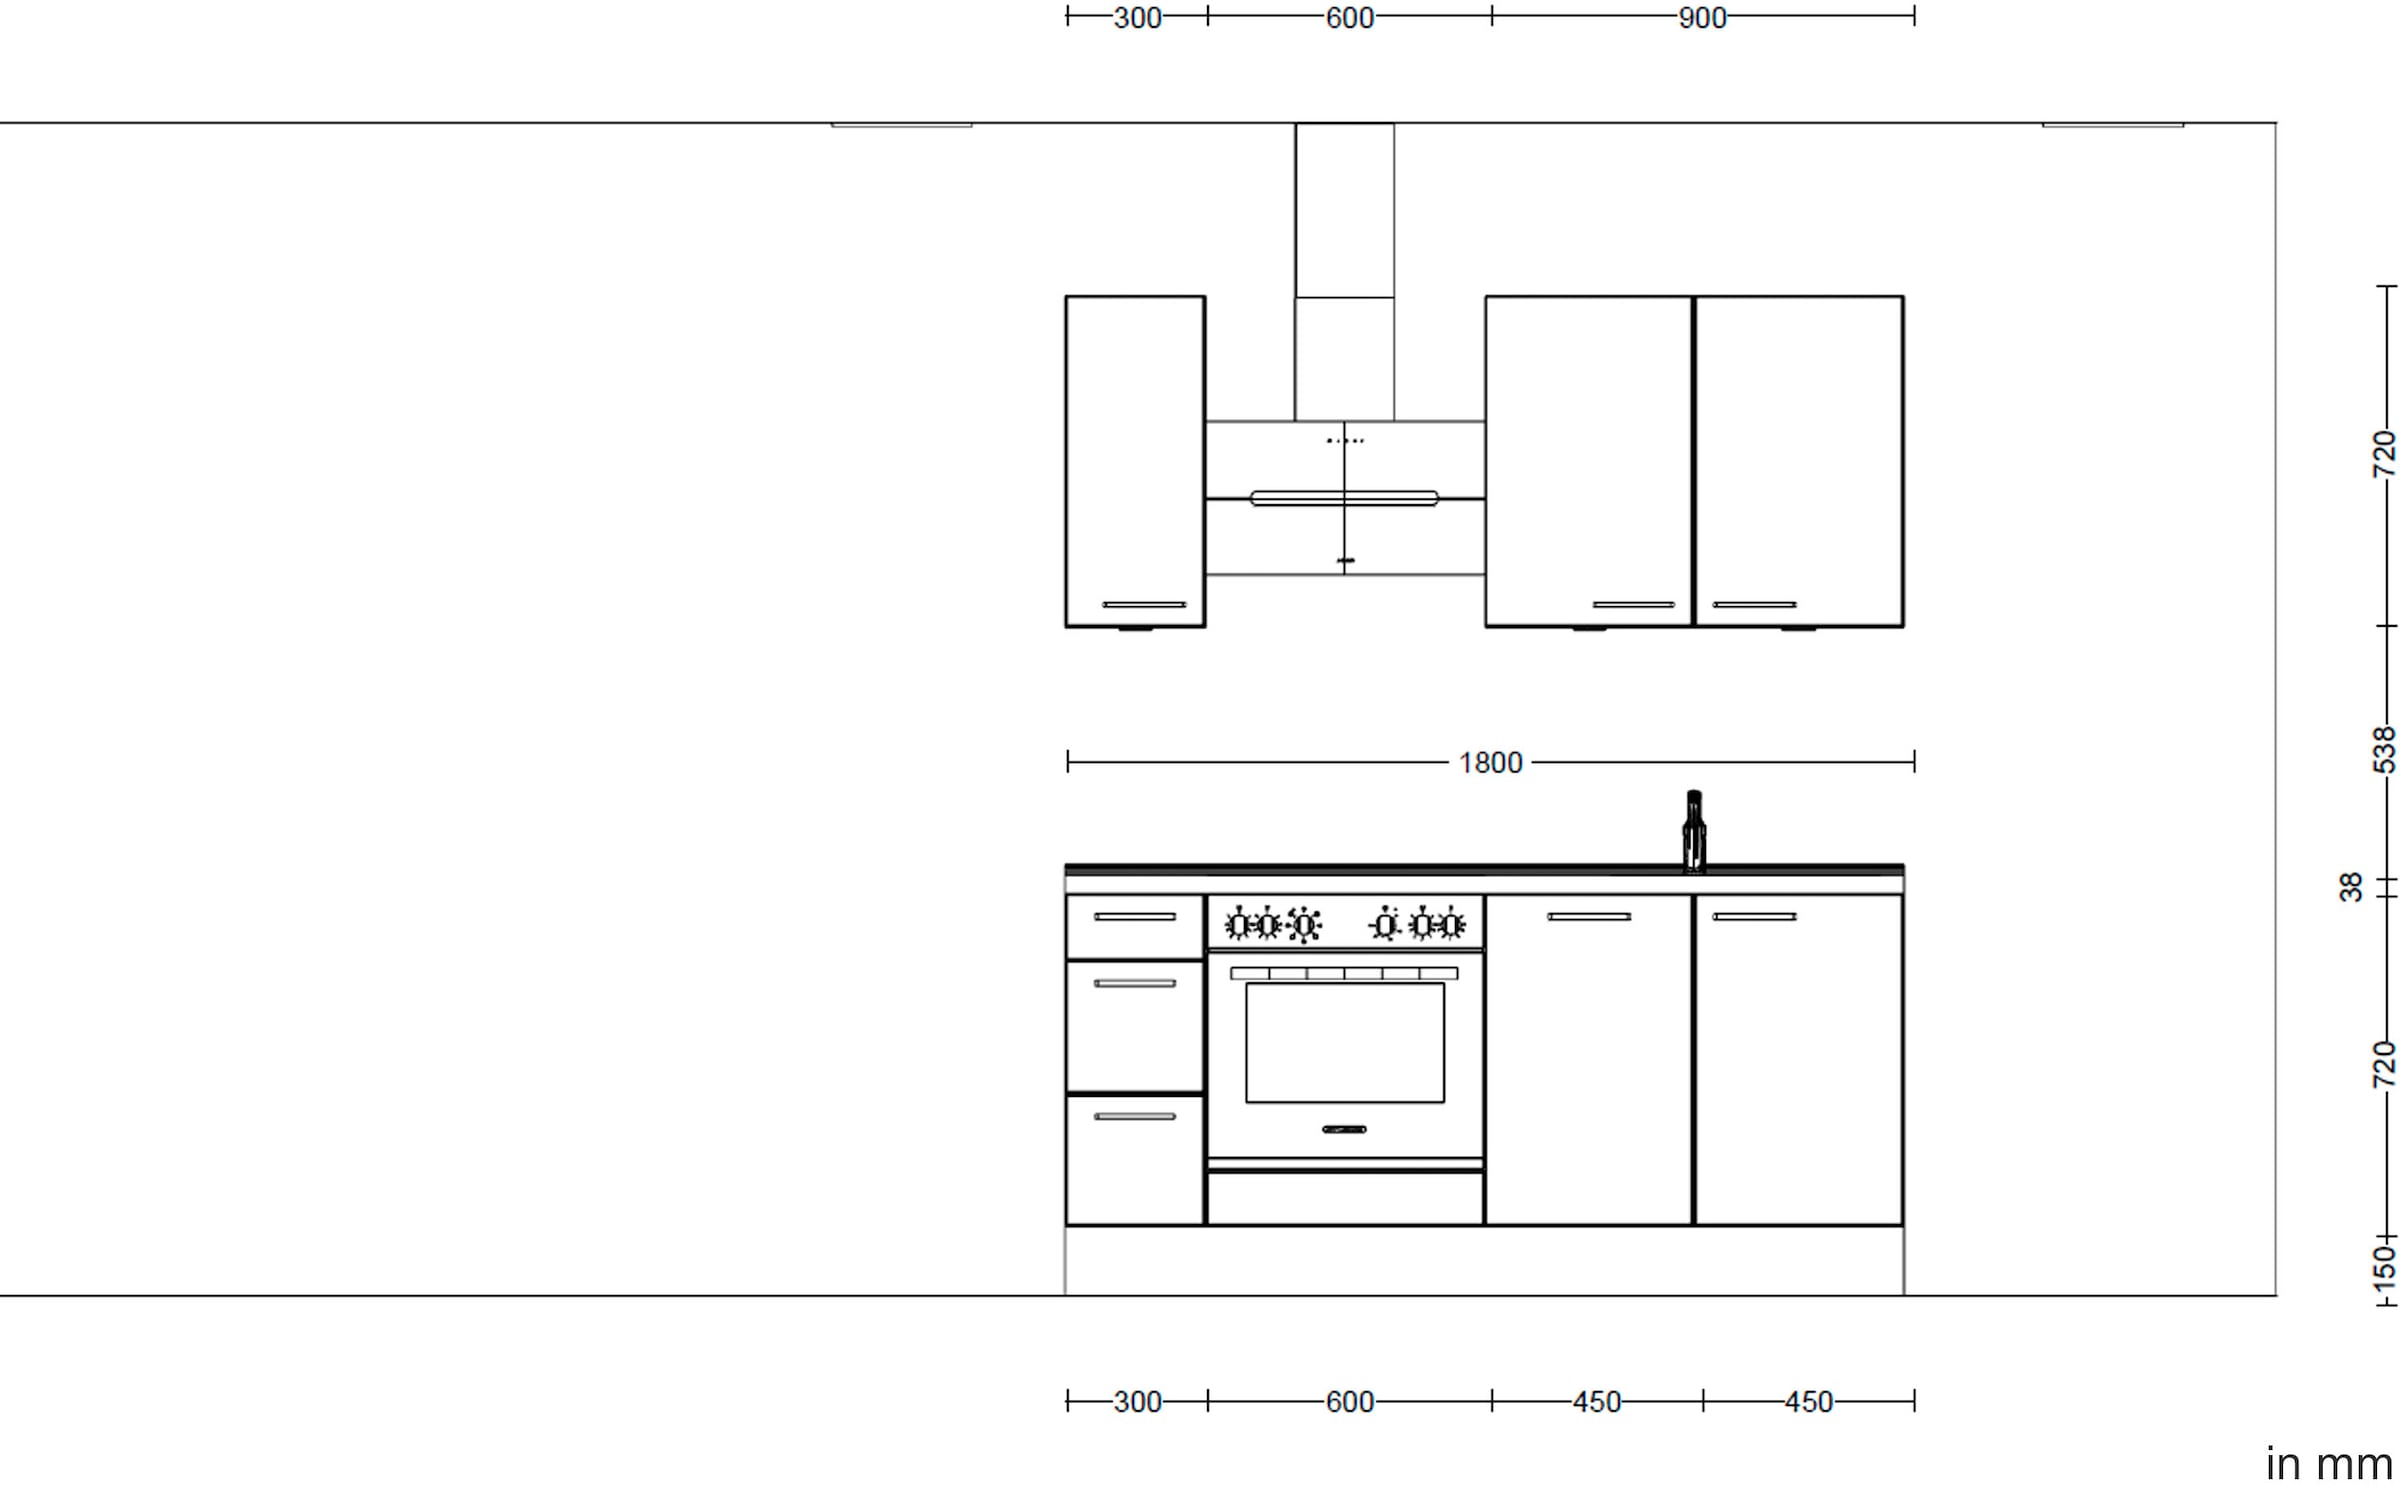 nobilia® Küchenzeile »"Structura premium"«, vormontiert, Ausrichtung wählbar, Breite 180 cm, mit E-Geräten